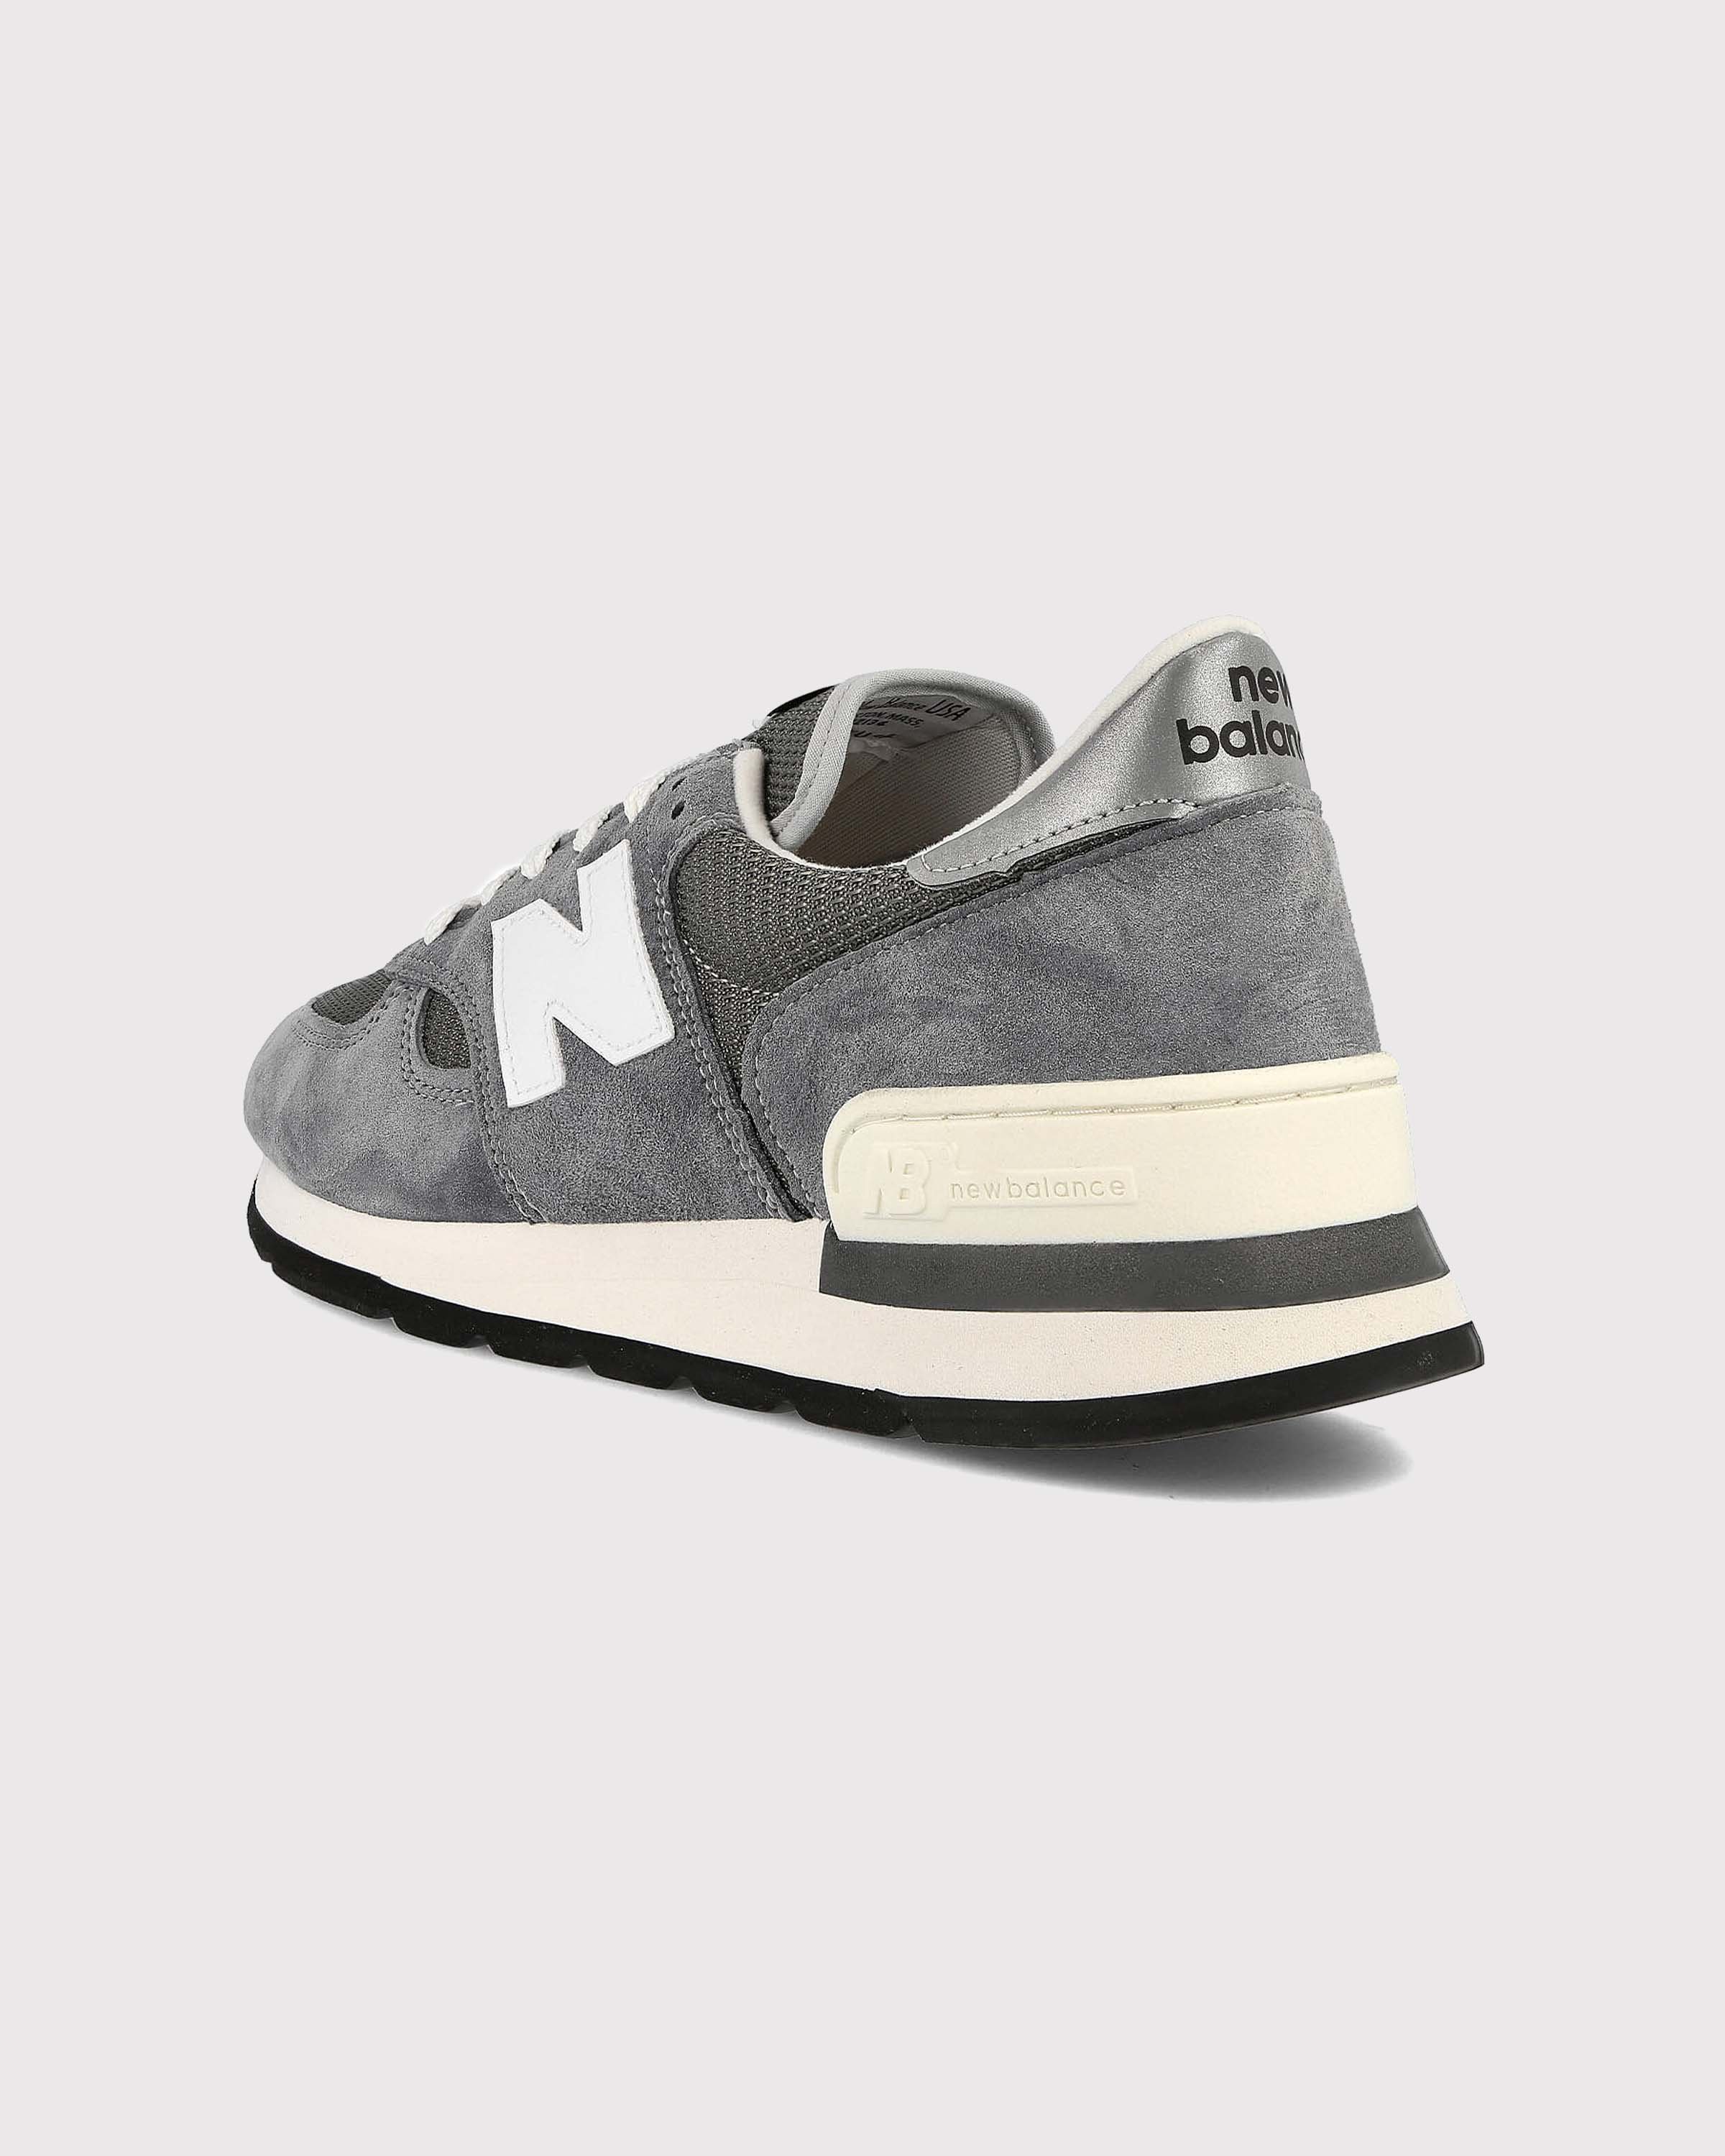 New Balance - M990GR1 Grey - Footwear - Grey - Image 4